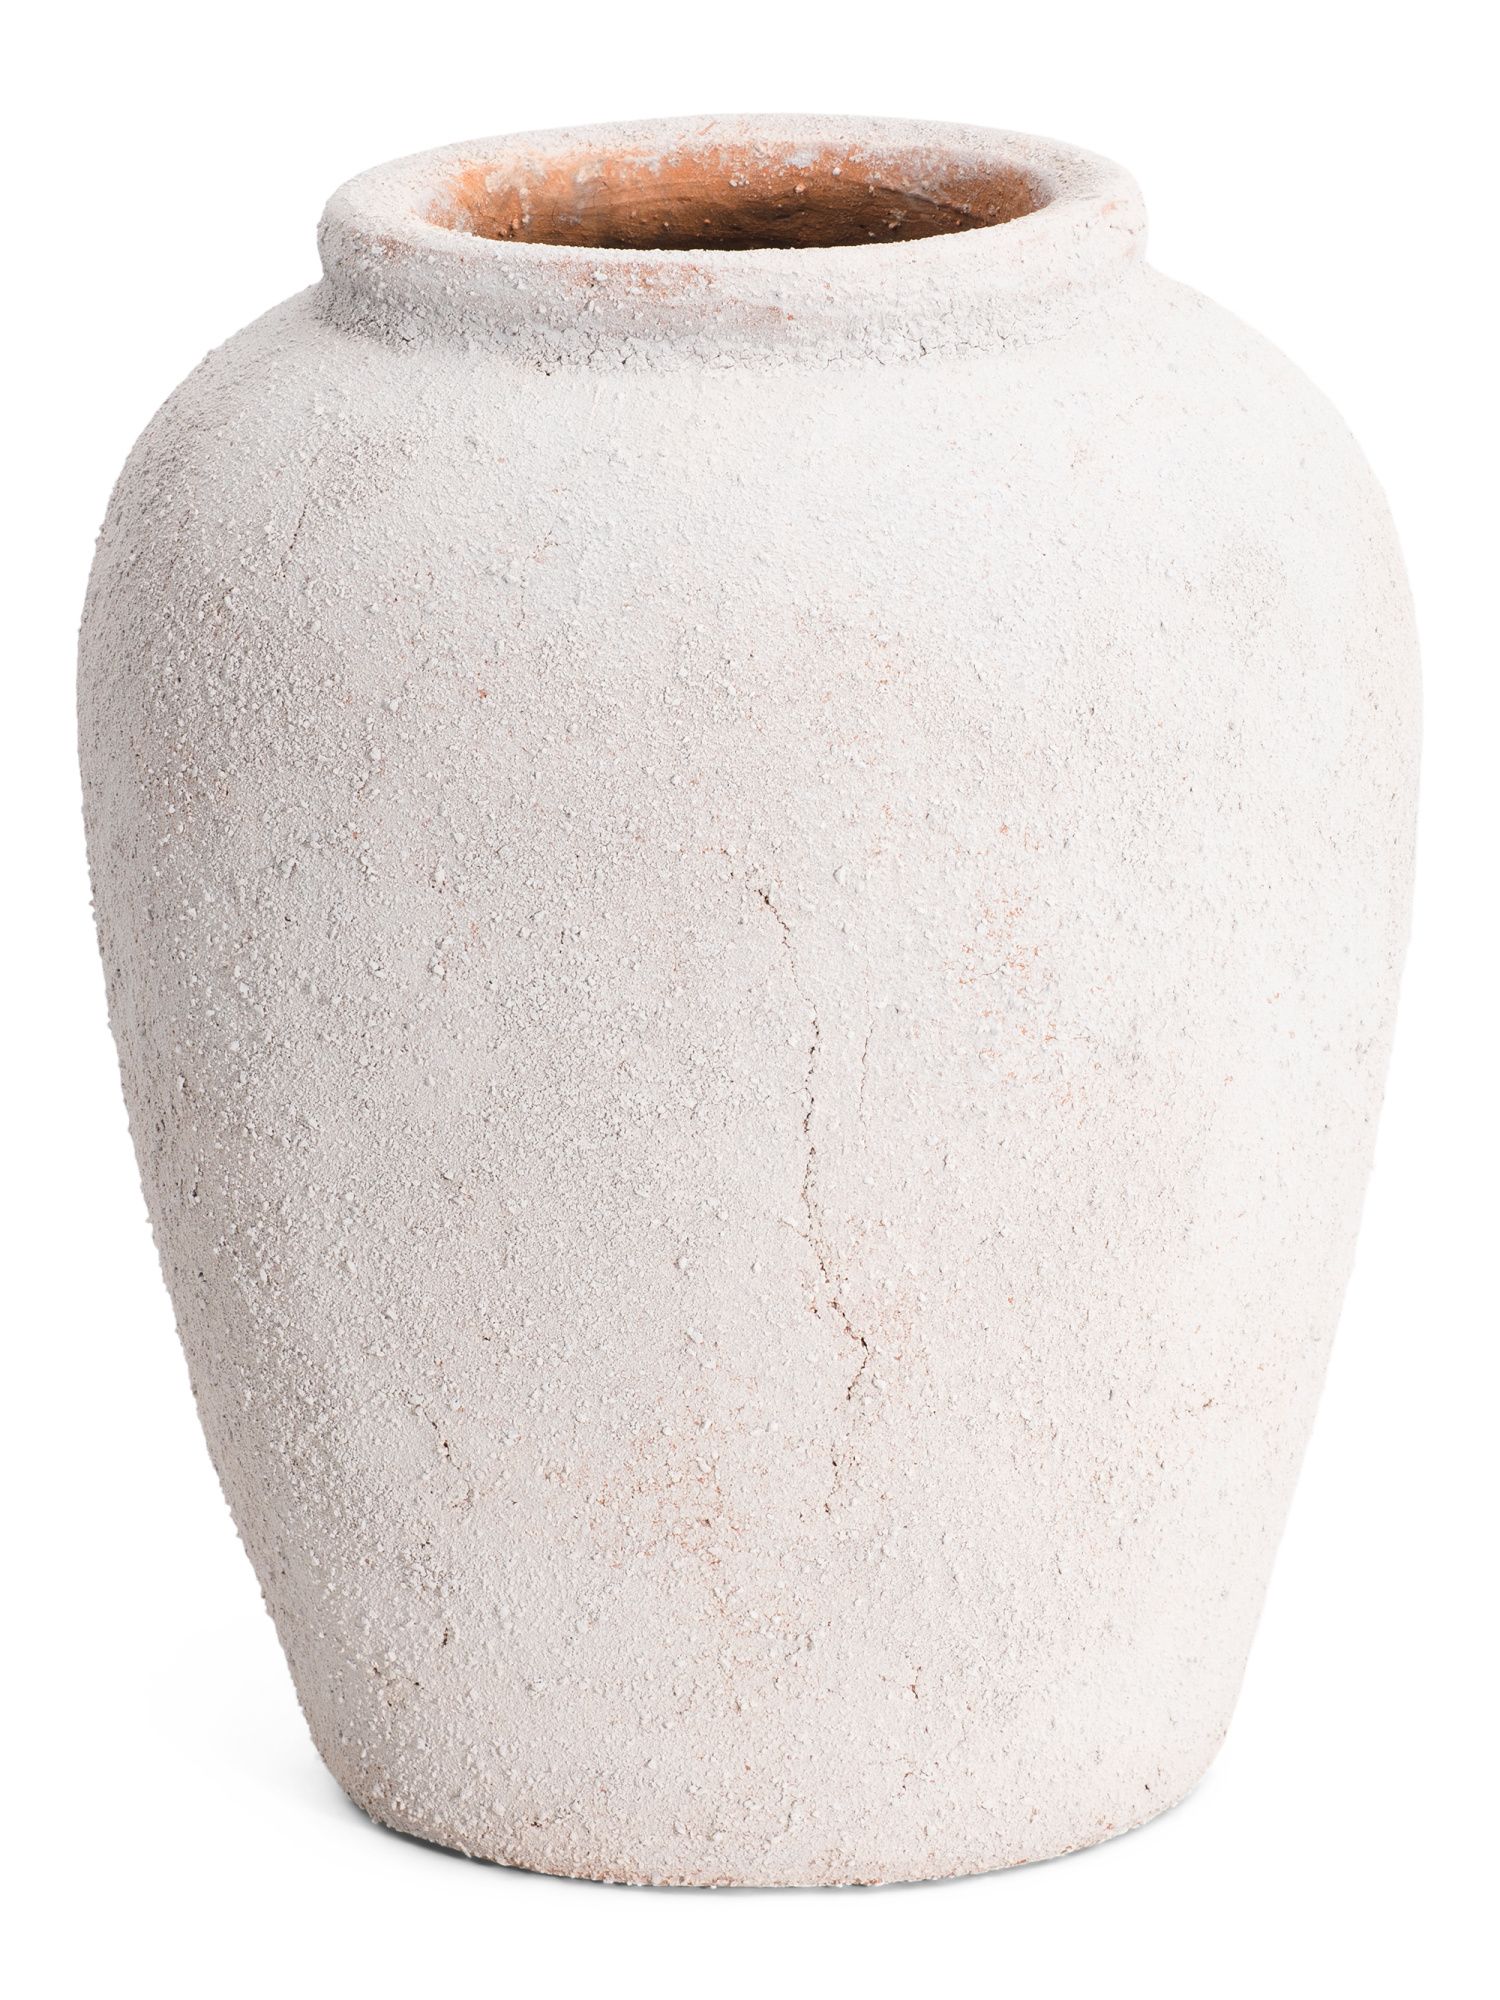 12in Terracotta Vase | TJ Maxx